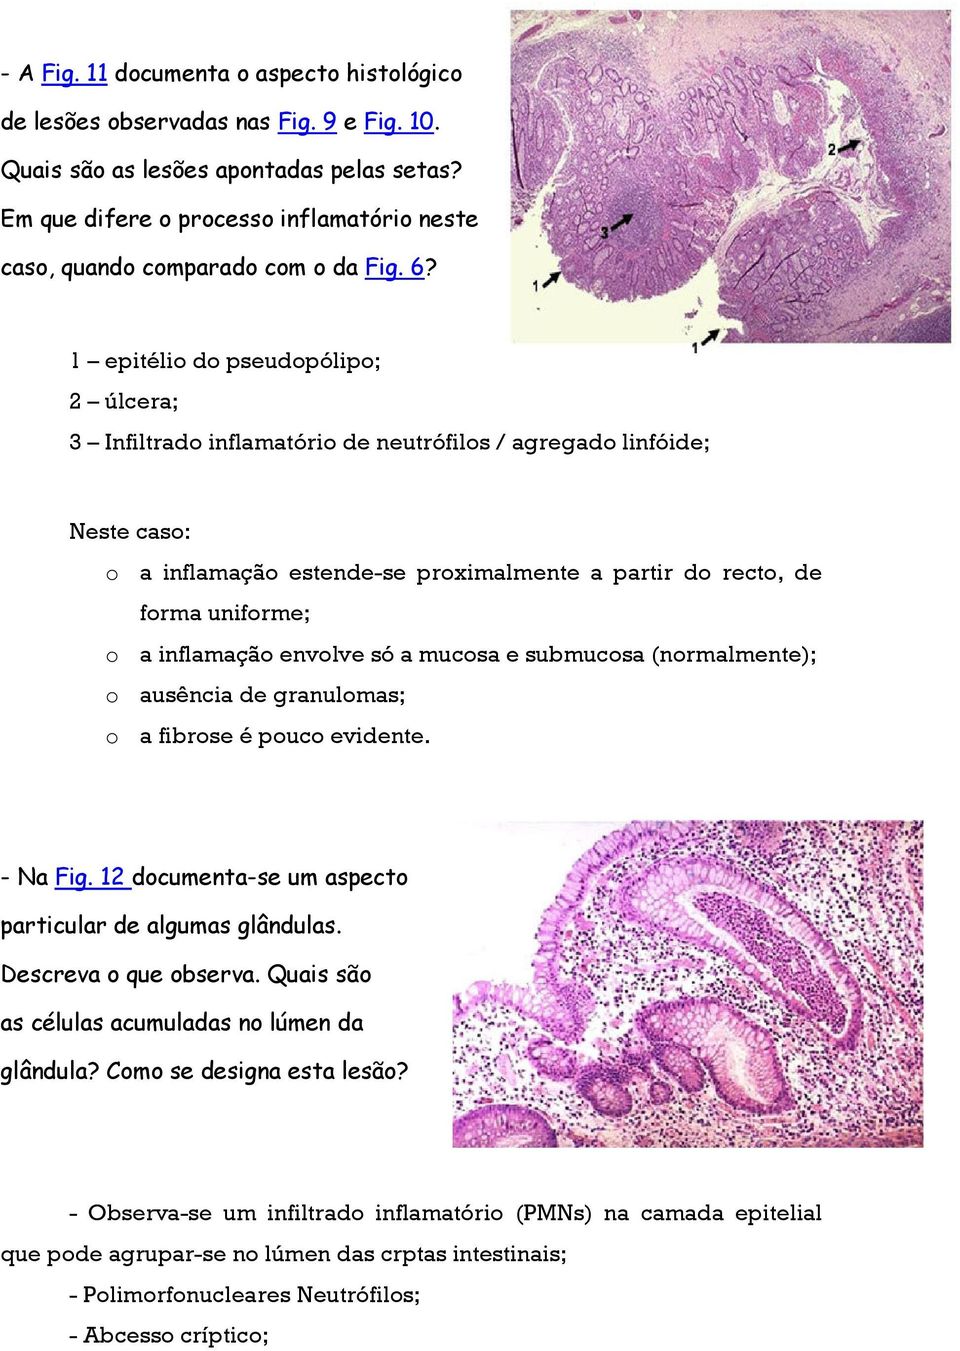 1 epitélio do pseudopólipo; 2 úlcera; 3 Infiltrado inflamatório de neutrófilos / agregado linfóide; Neste caso: o a inflamação estende-se proximalmente a partir do recto, de forma uniforme; o a